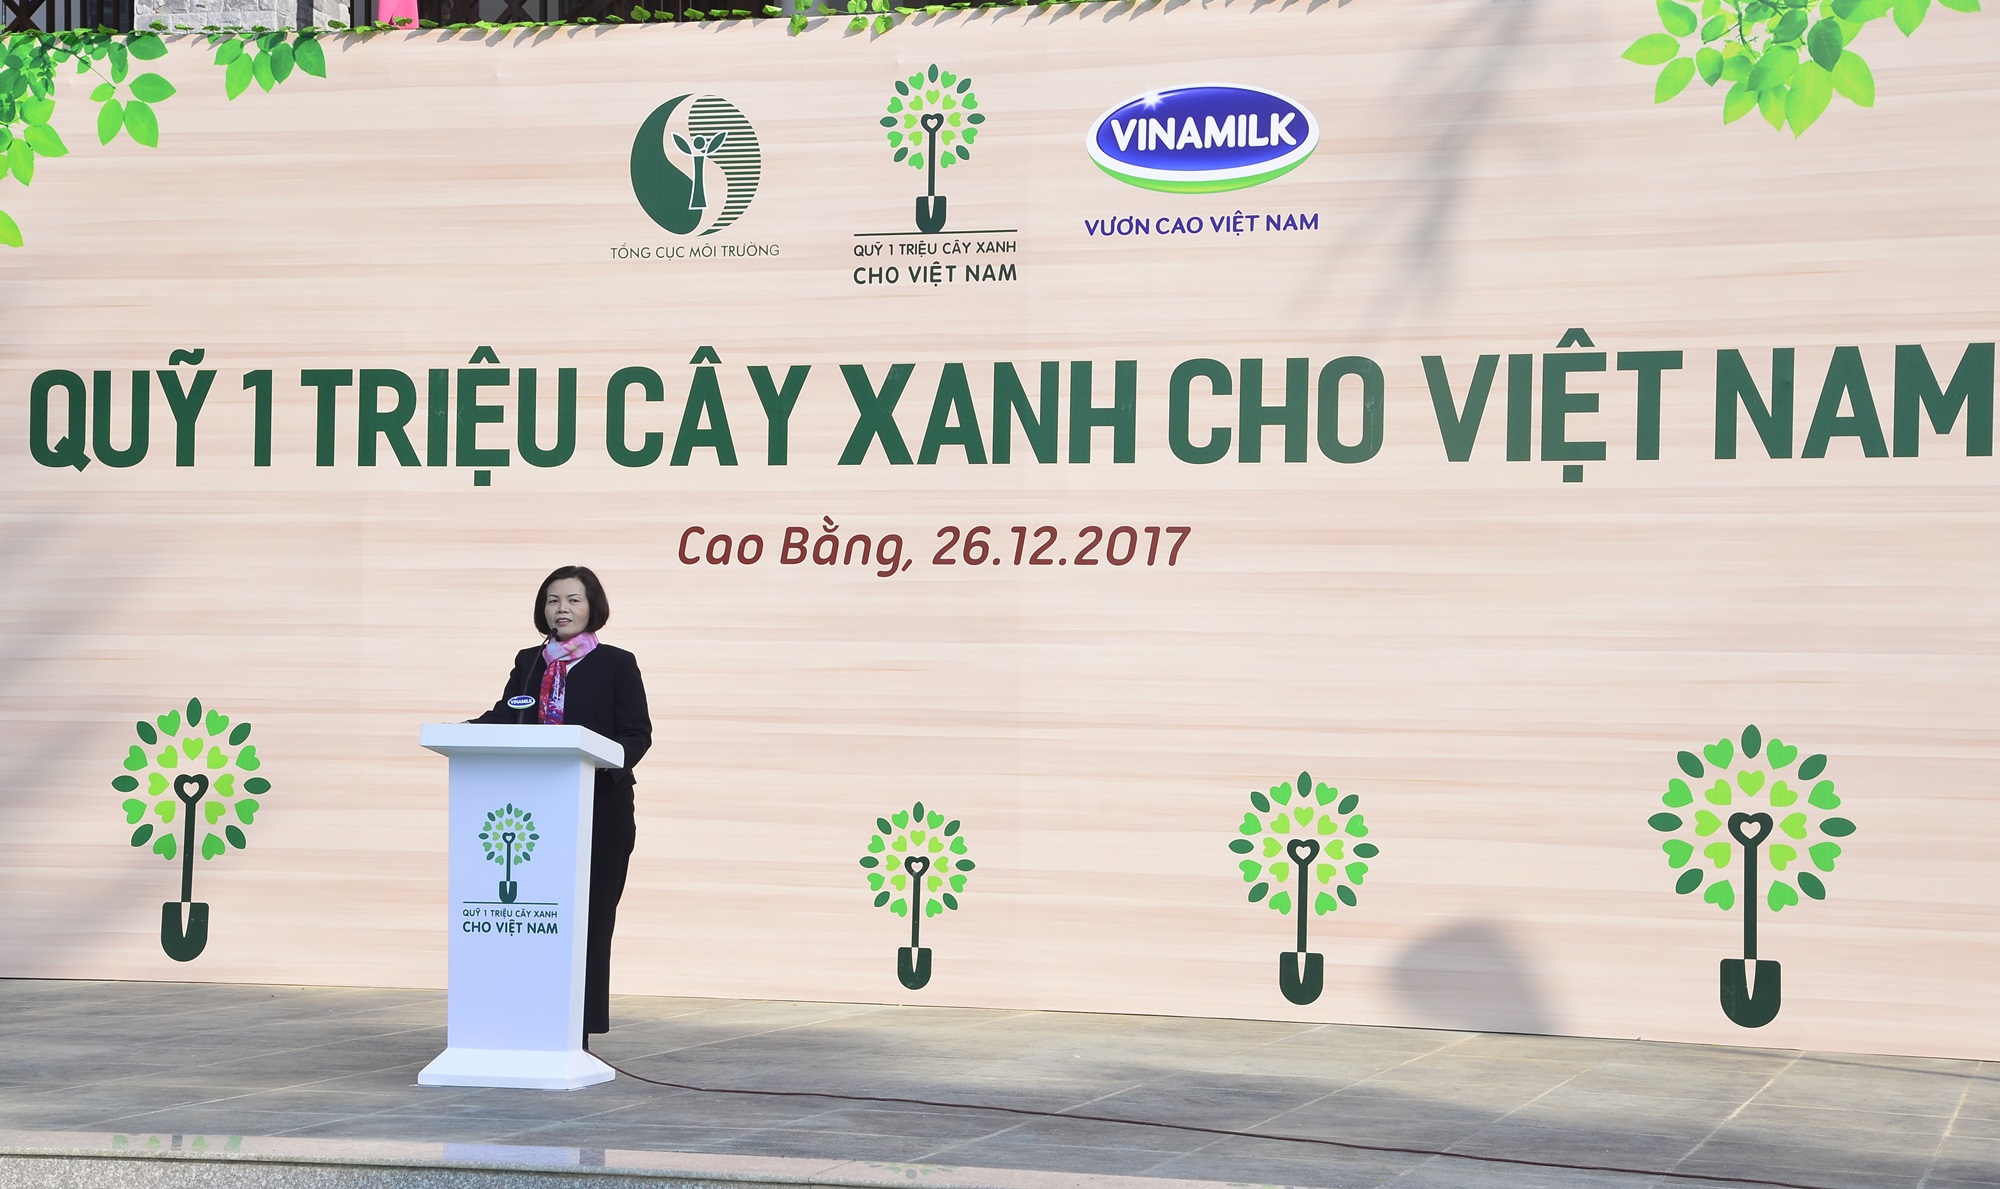 Quỹ 1 triệu cây xanh của Vinamilk ngược đến Cao Bằng